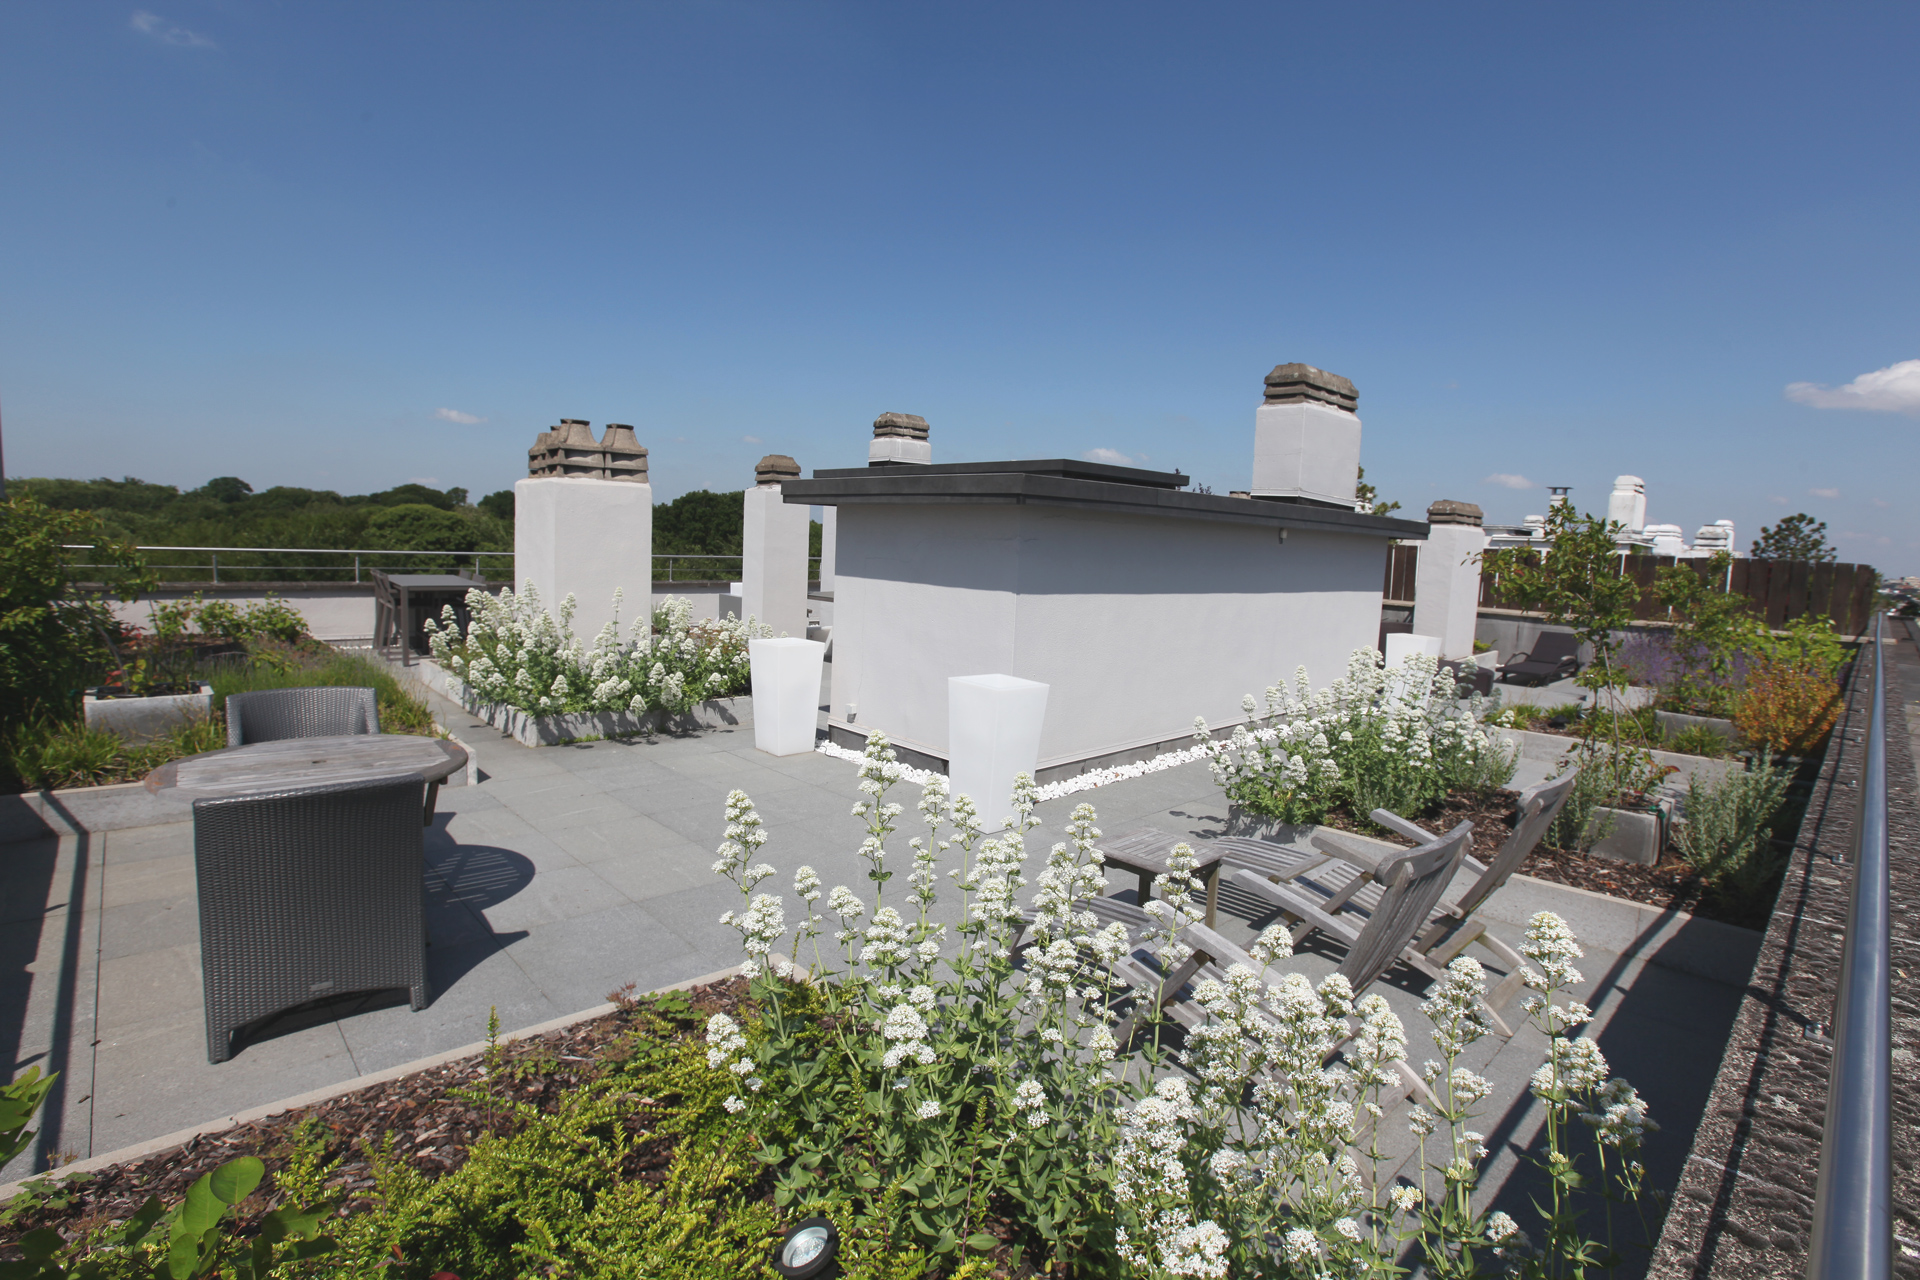 Terrace sur le toit de Marcottestyle: - Marcotte Style